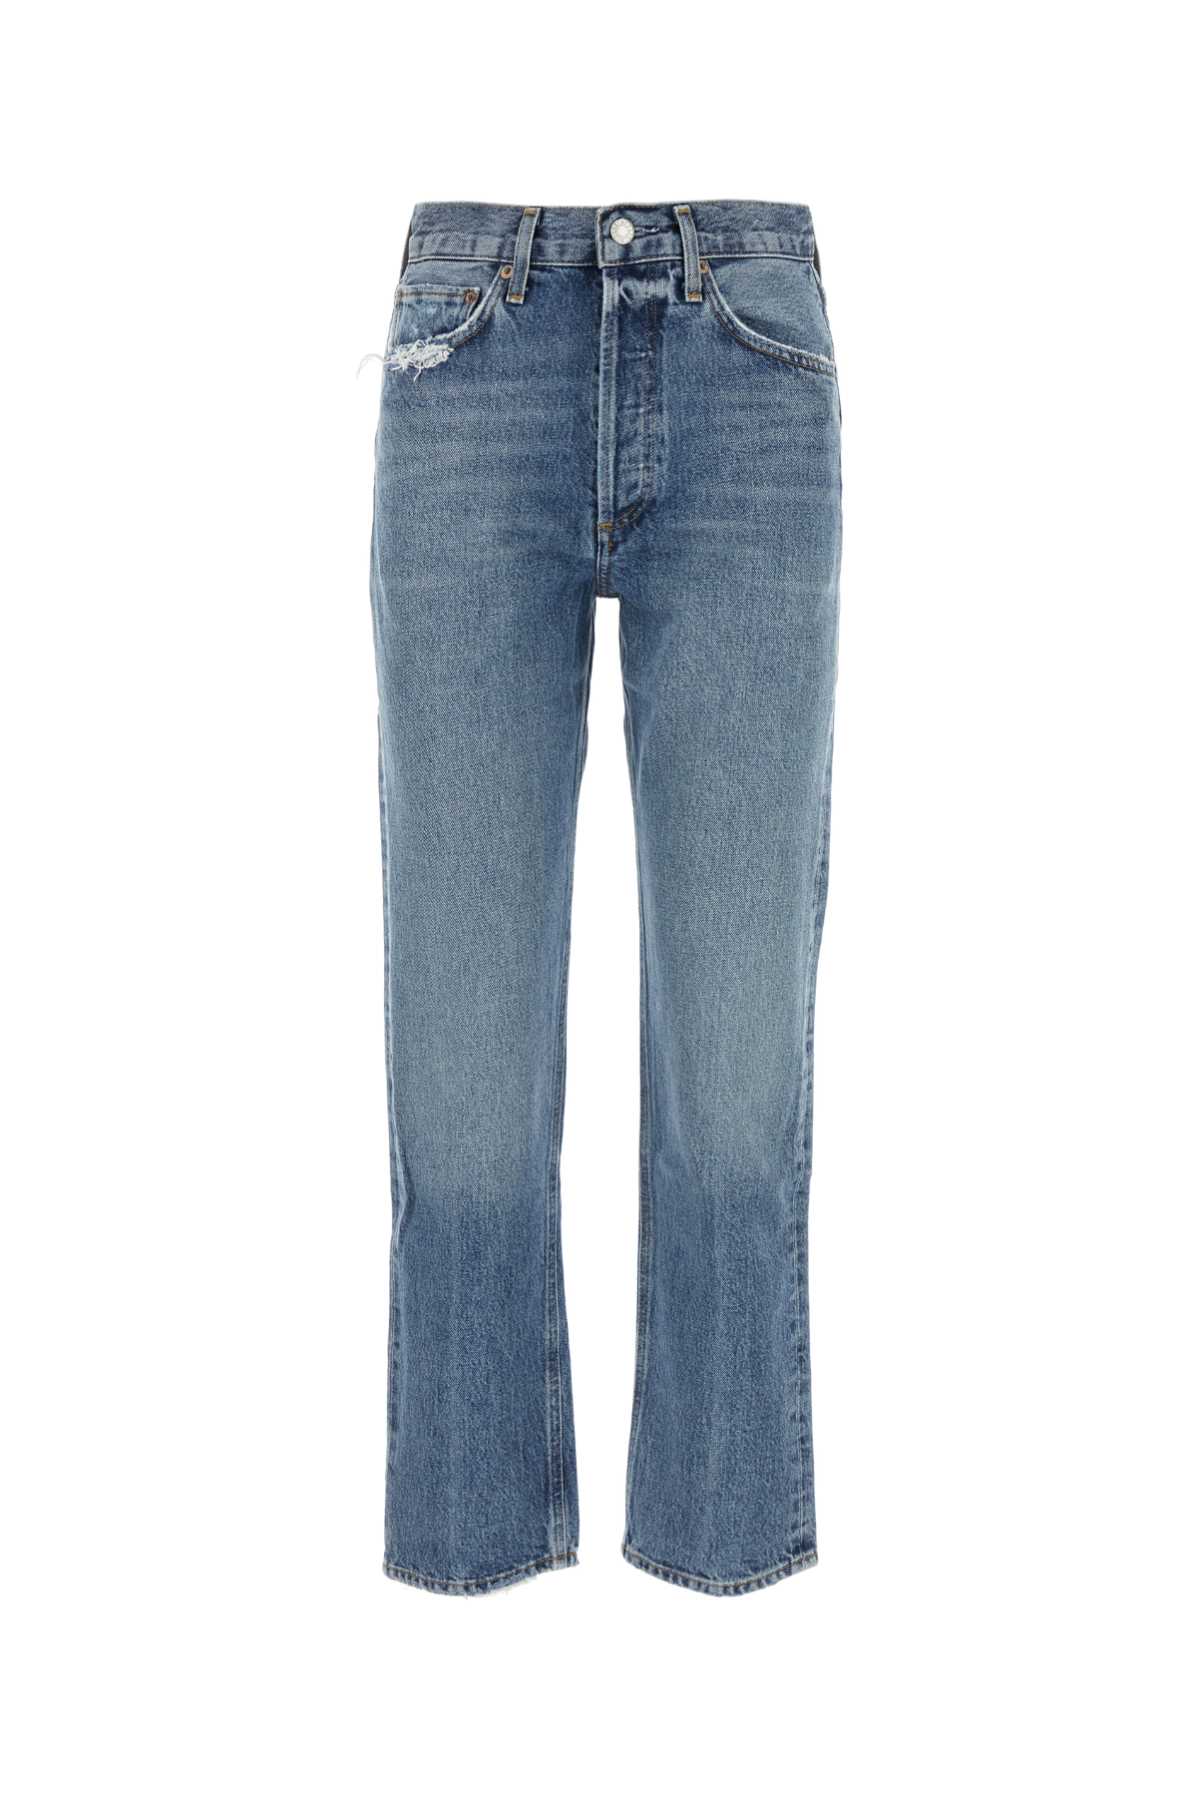 Agolde Denim 90s Jeans In Hook